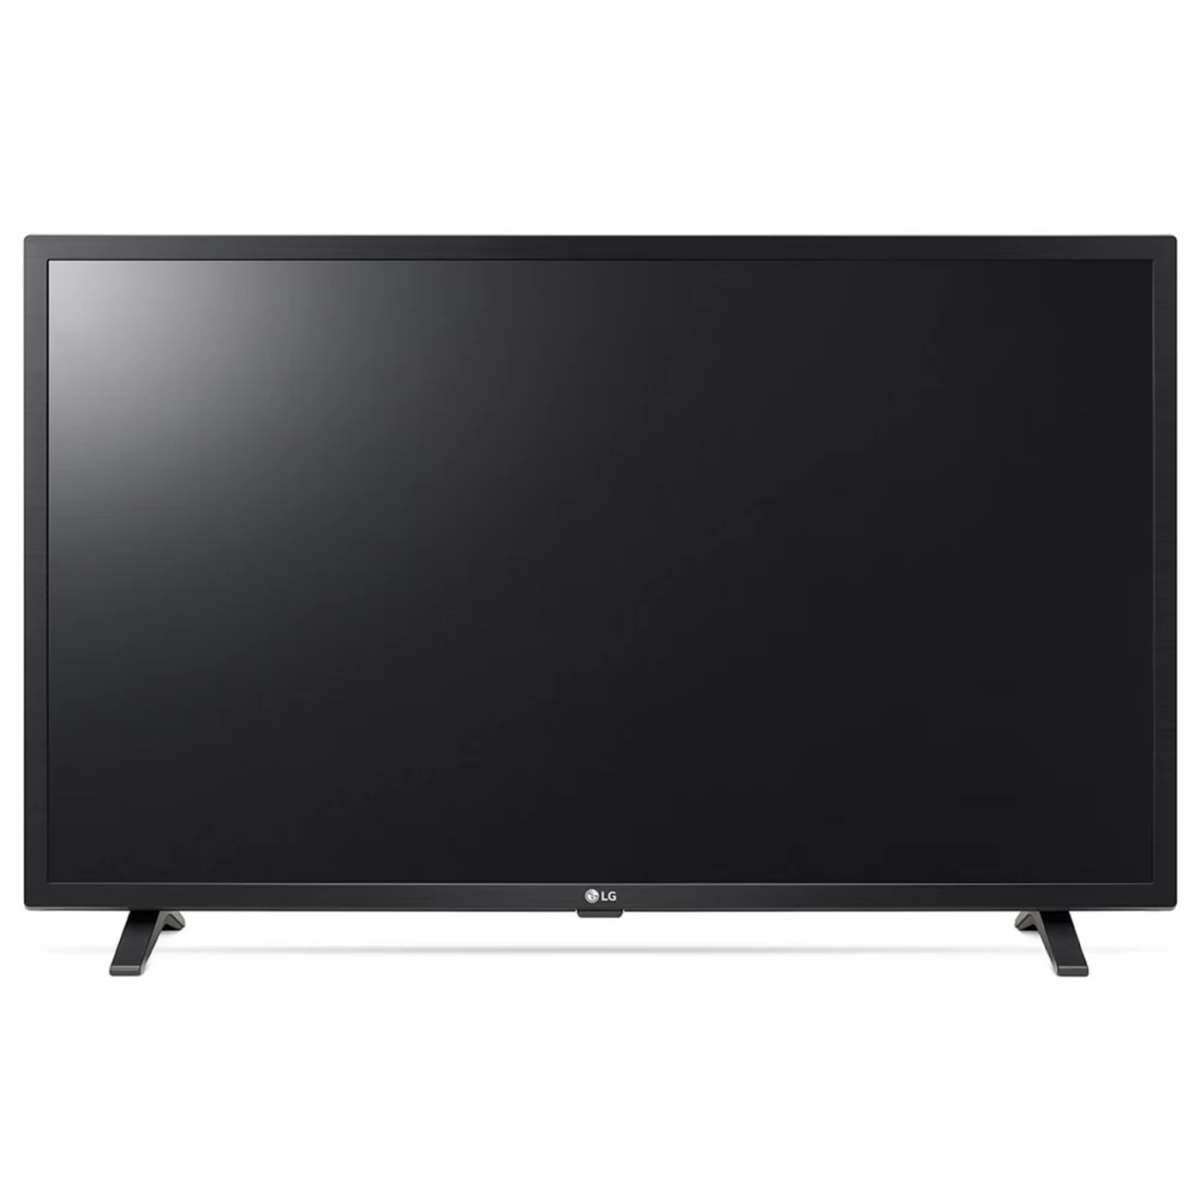 LG 32LQ630B6LA LED TV 80cm, HD Ready, Smart, HDR, webOS ThinQ AI okos televízió, fekete EU